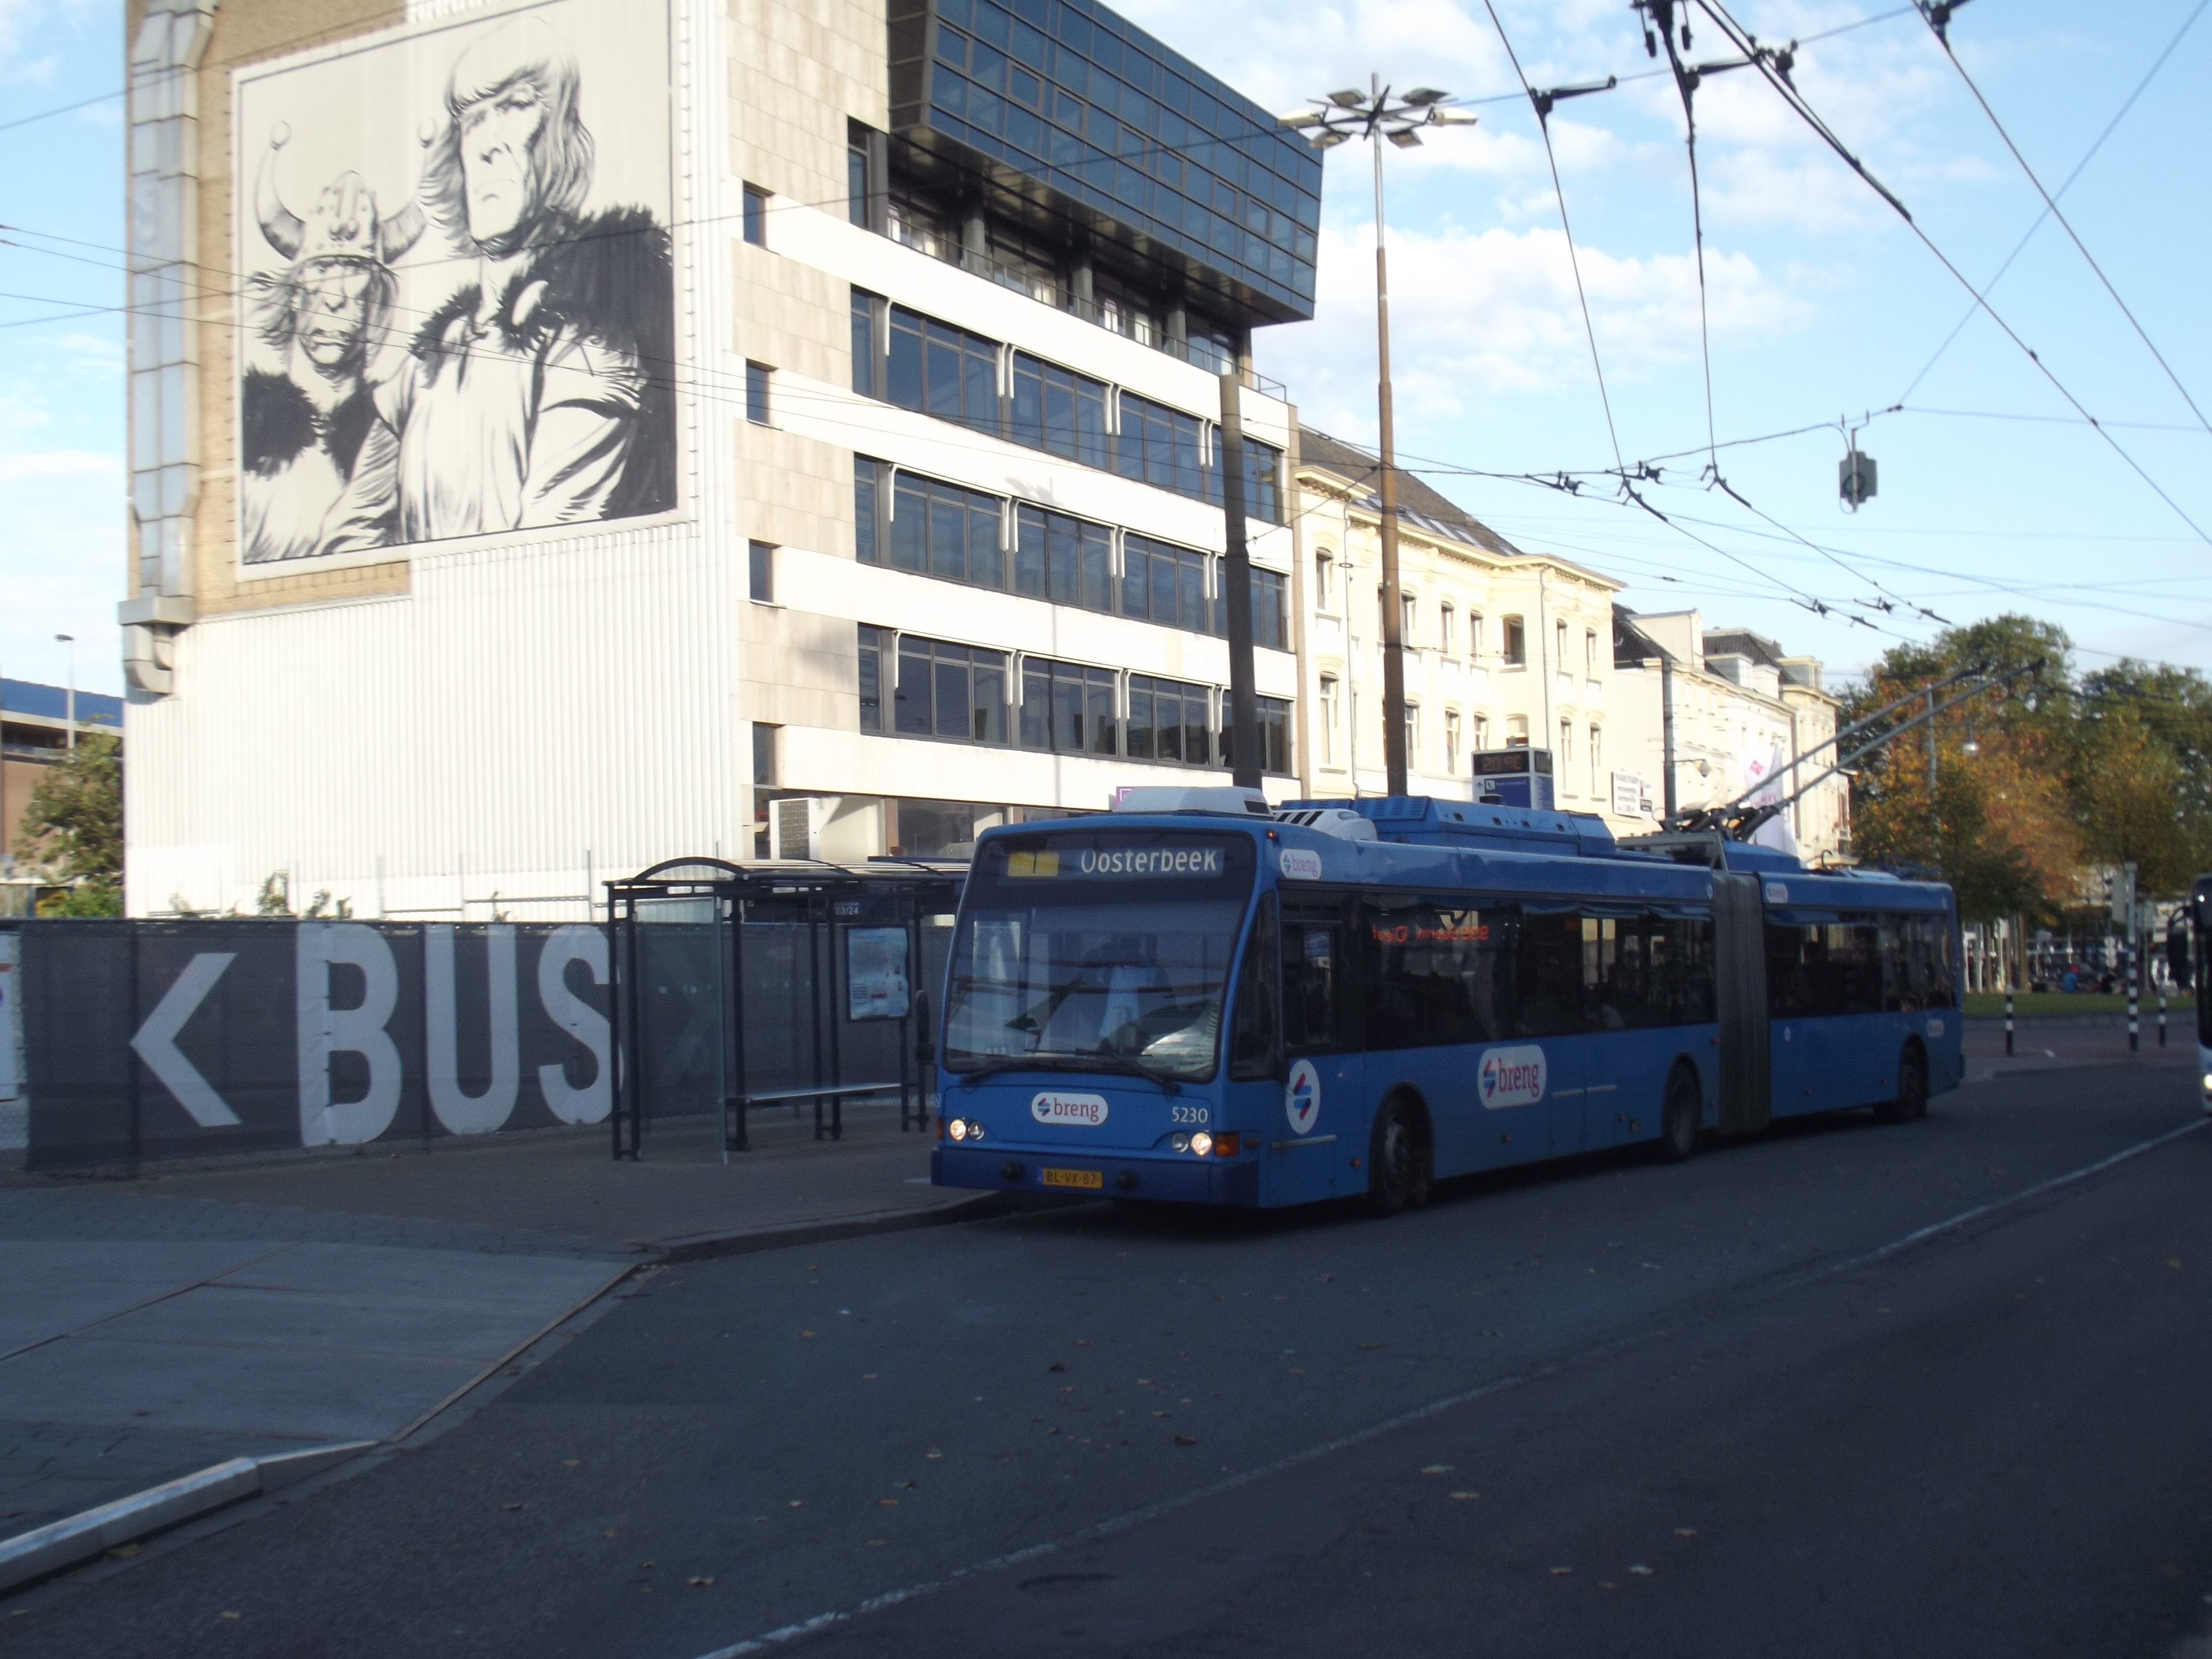 File:Trolleybushalte lijn 1 in II.jpg - Wikimedia